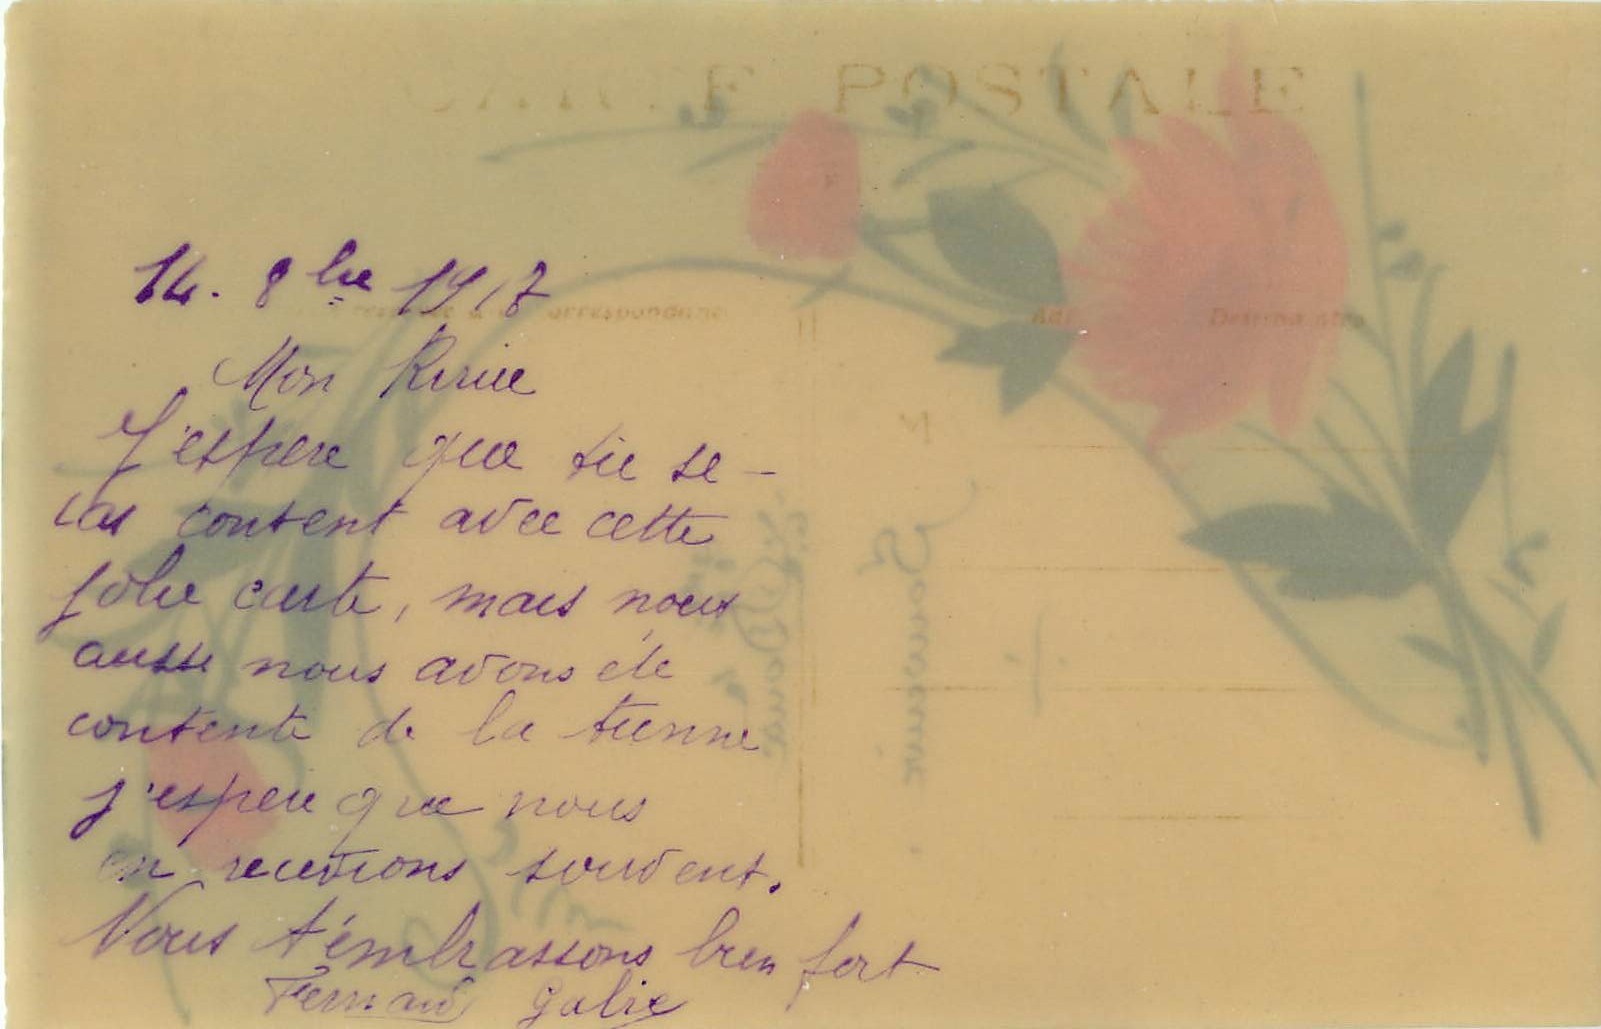 fleurs doux souvenir roses peintes a la main sur celluloid 1917